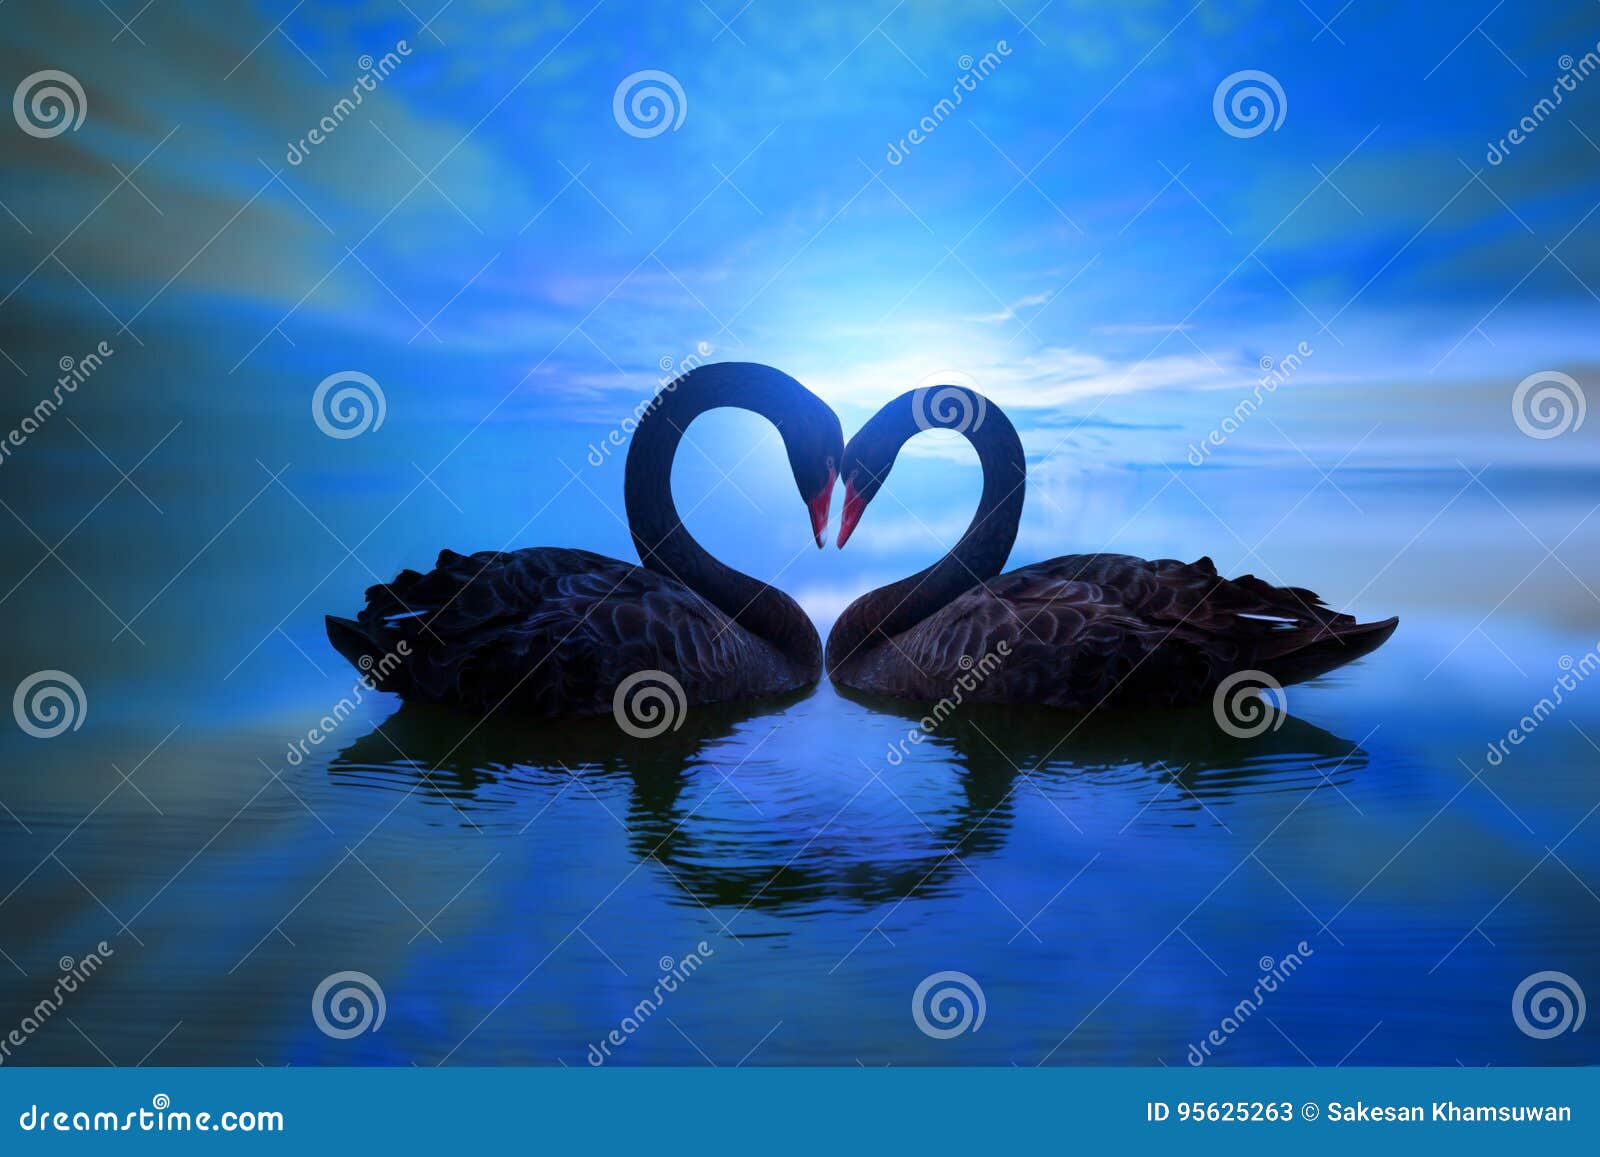 Beau Cygne Noir Dans La Forme De Coeur Sur La Lumiere De Lune Bleue De Lac Image Stock Image Du Lune Mignon